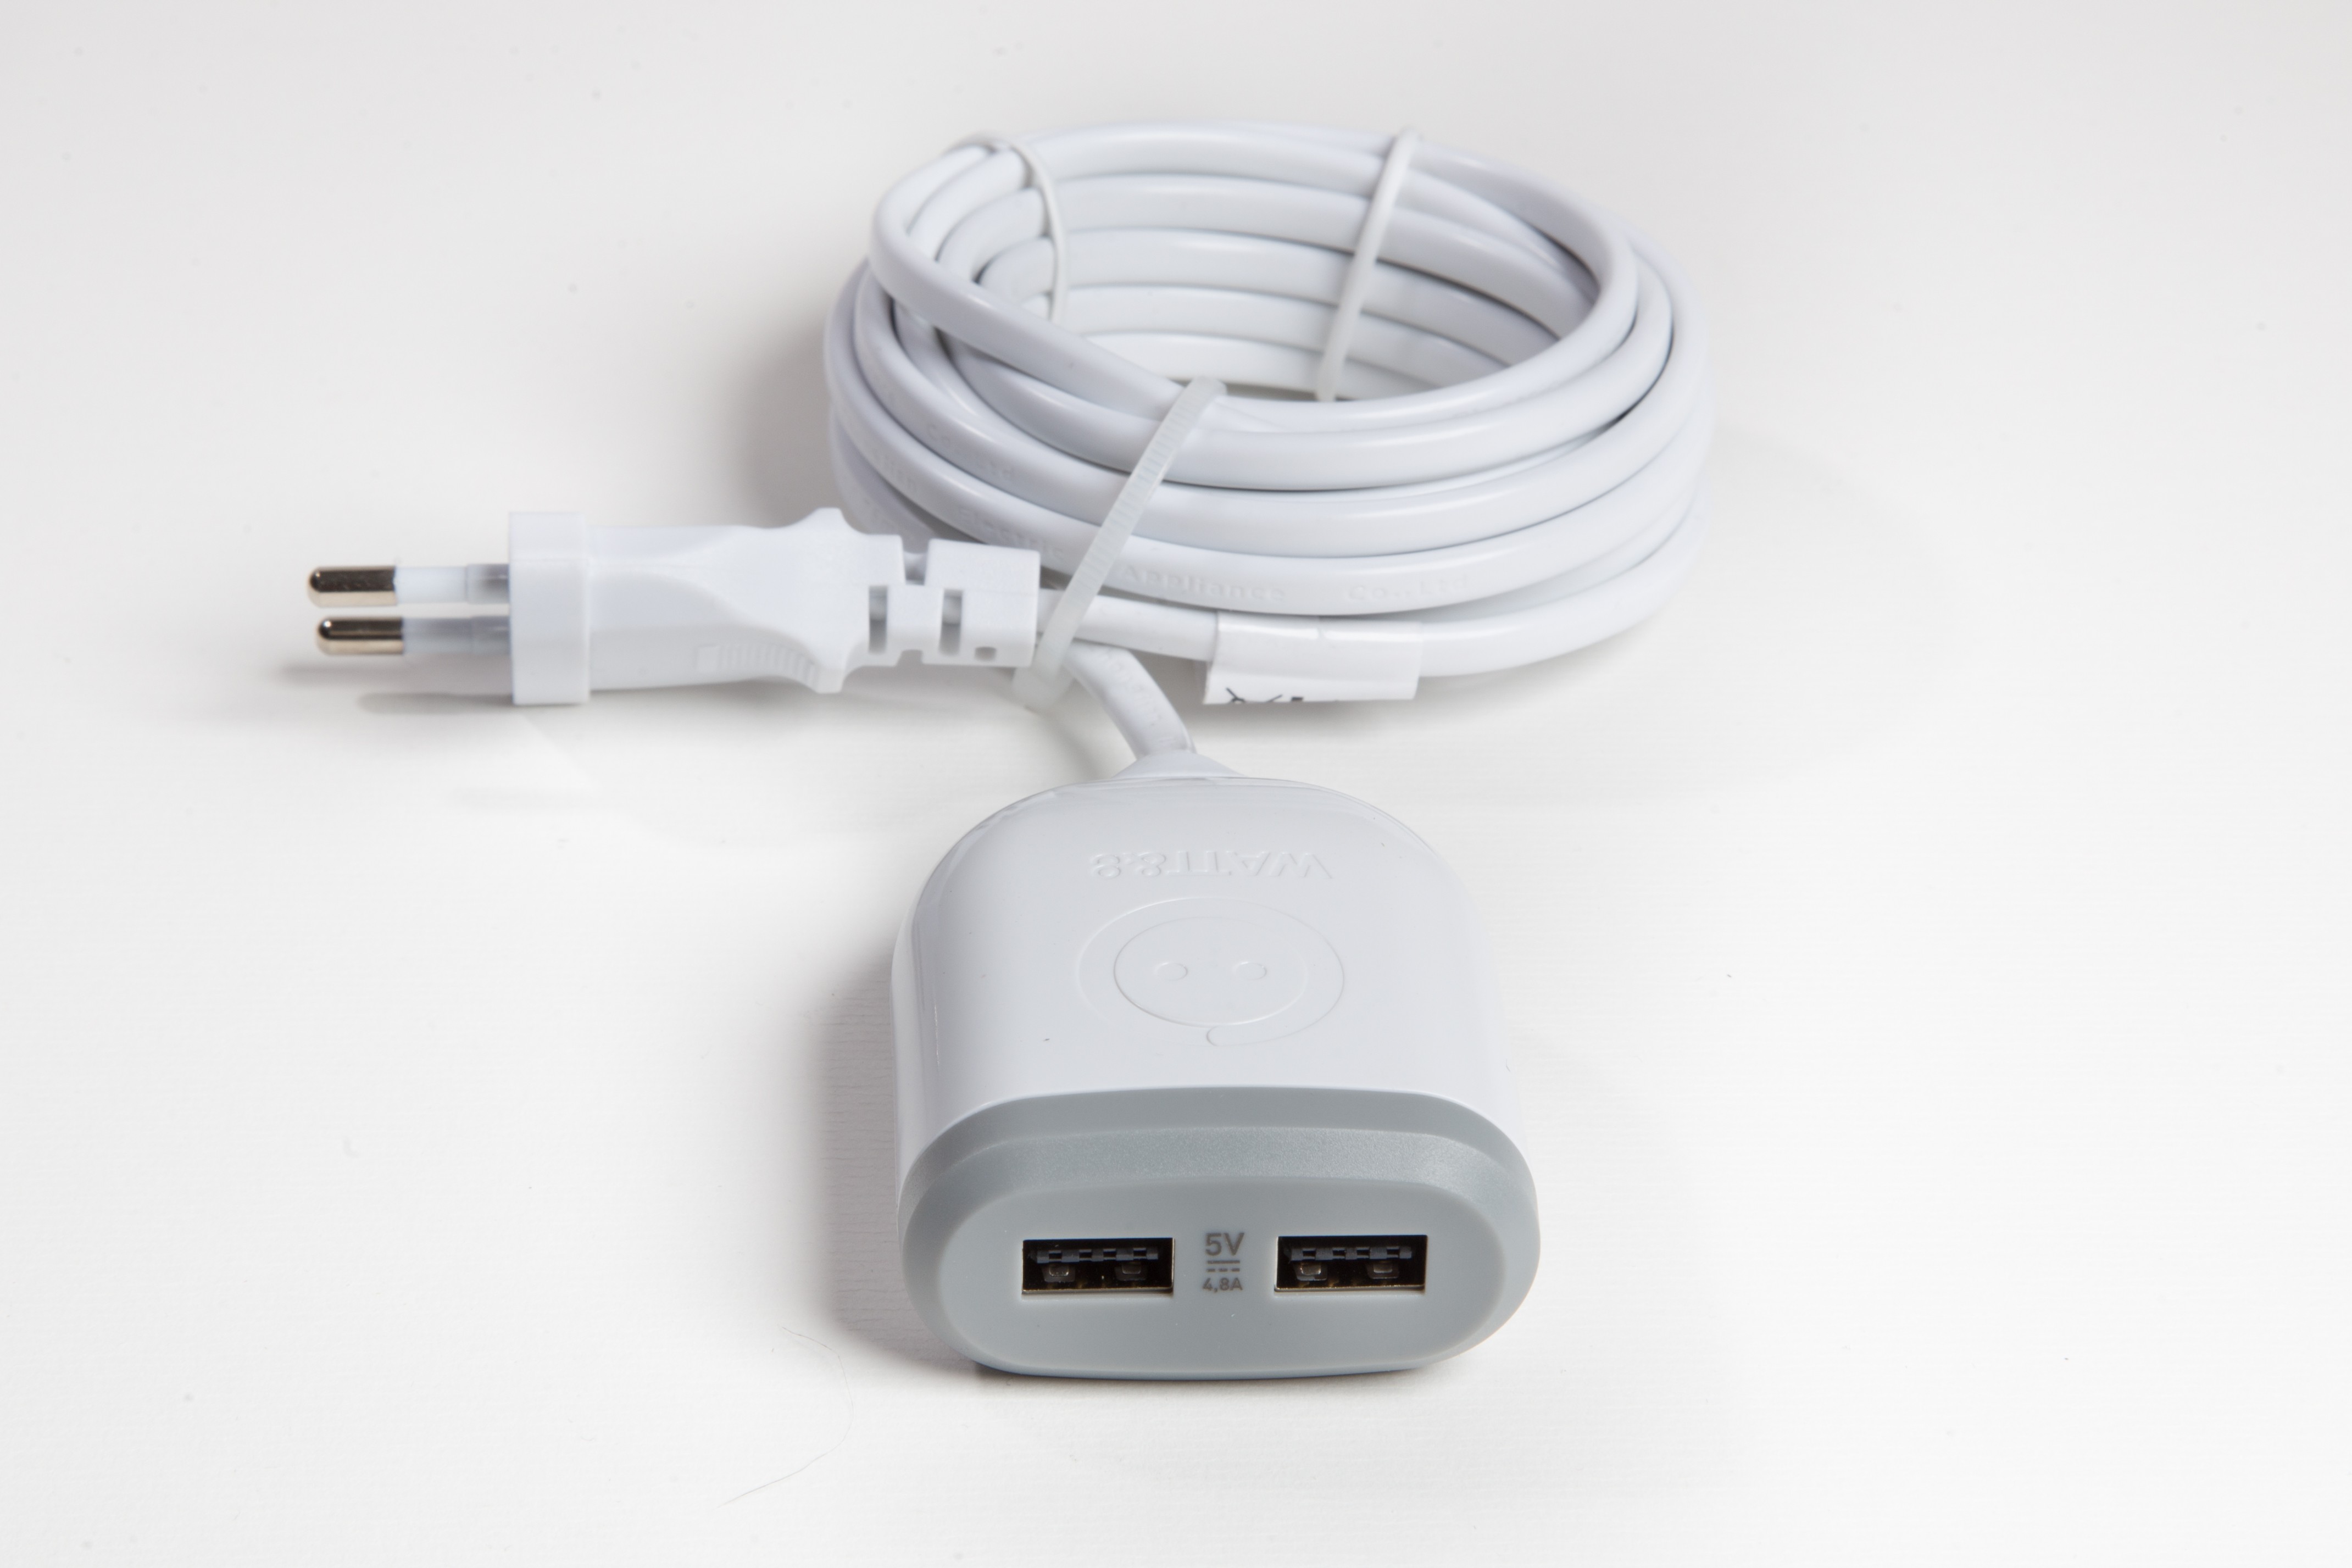 Goobay - Double chargeur rapide USB QC3.0 28W Blanc - Chargeur téléphone -  LDLC